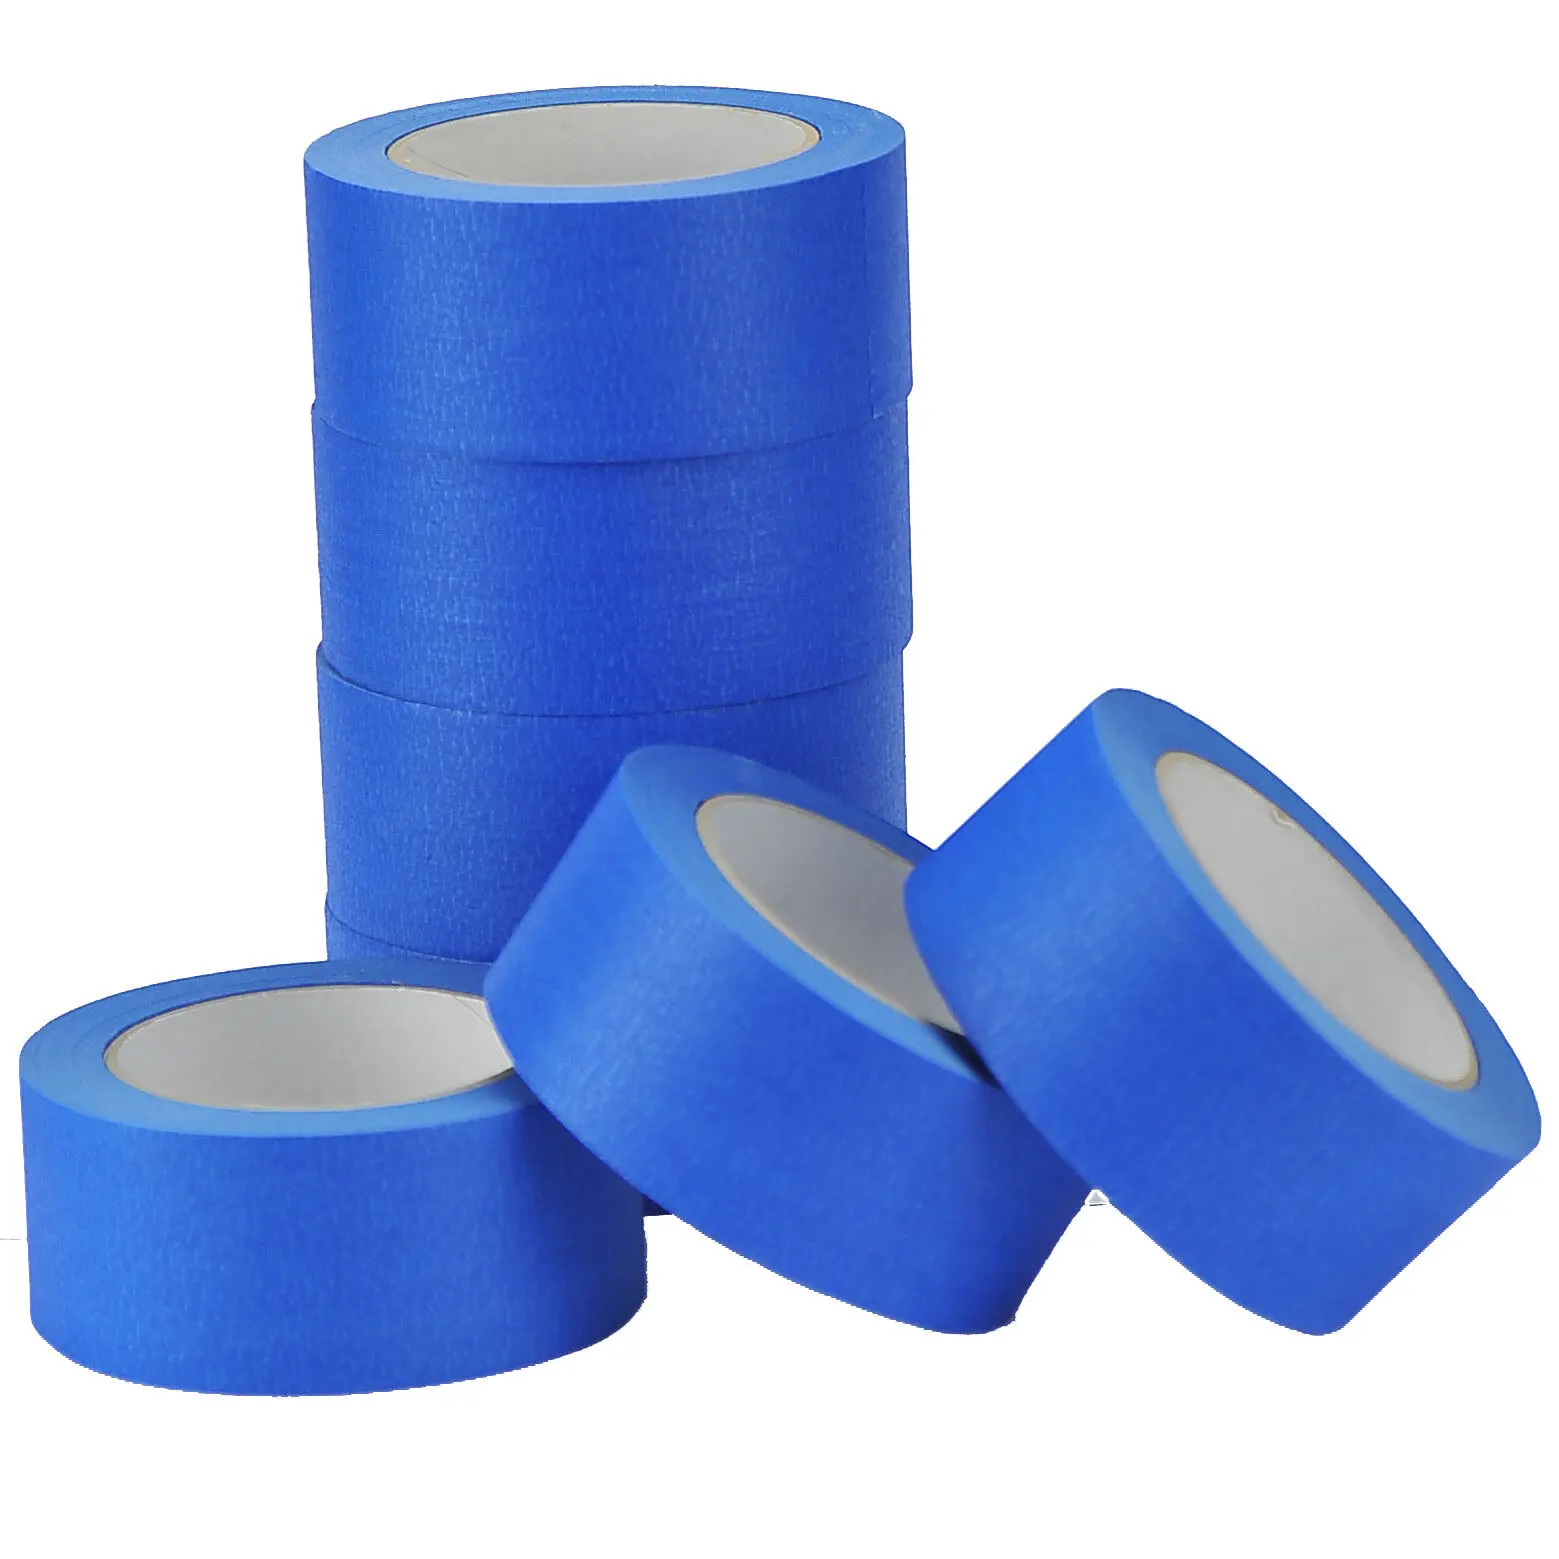 36 gulungan pita cat biru Premium 1,88in 60yd selotip kertas untuk kerajinan DIY 48mm 60yd